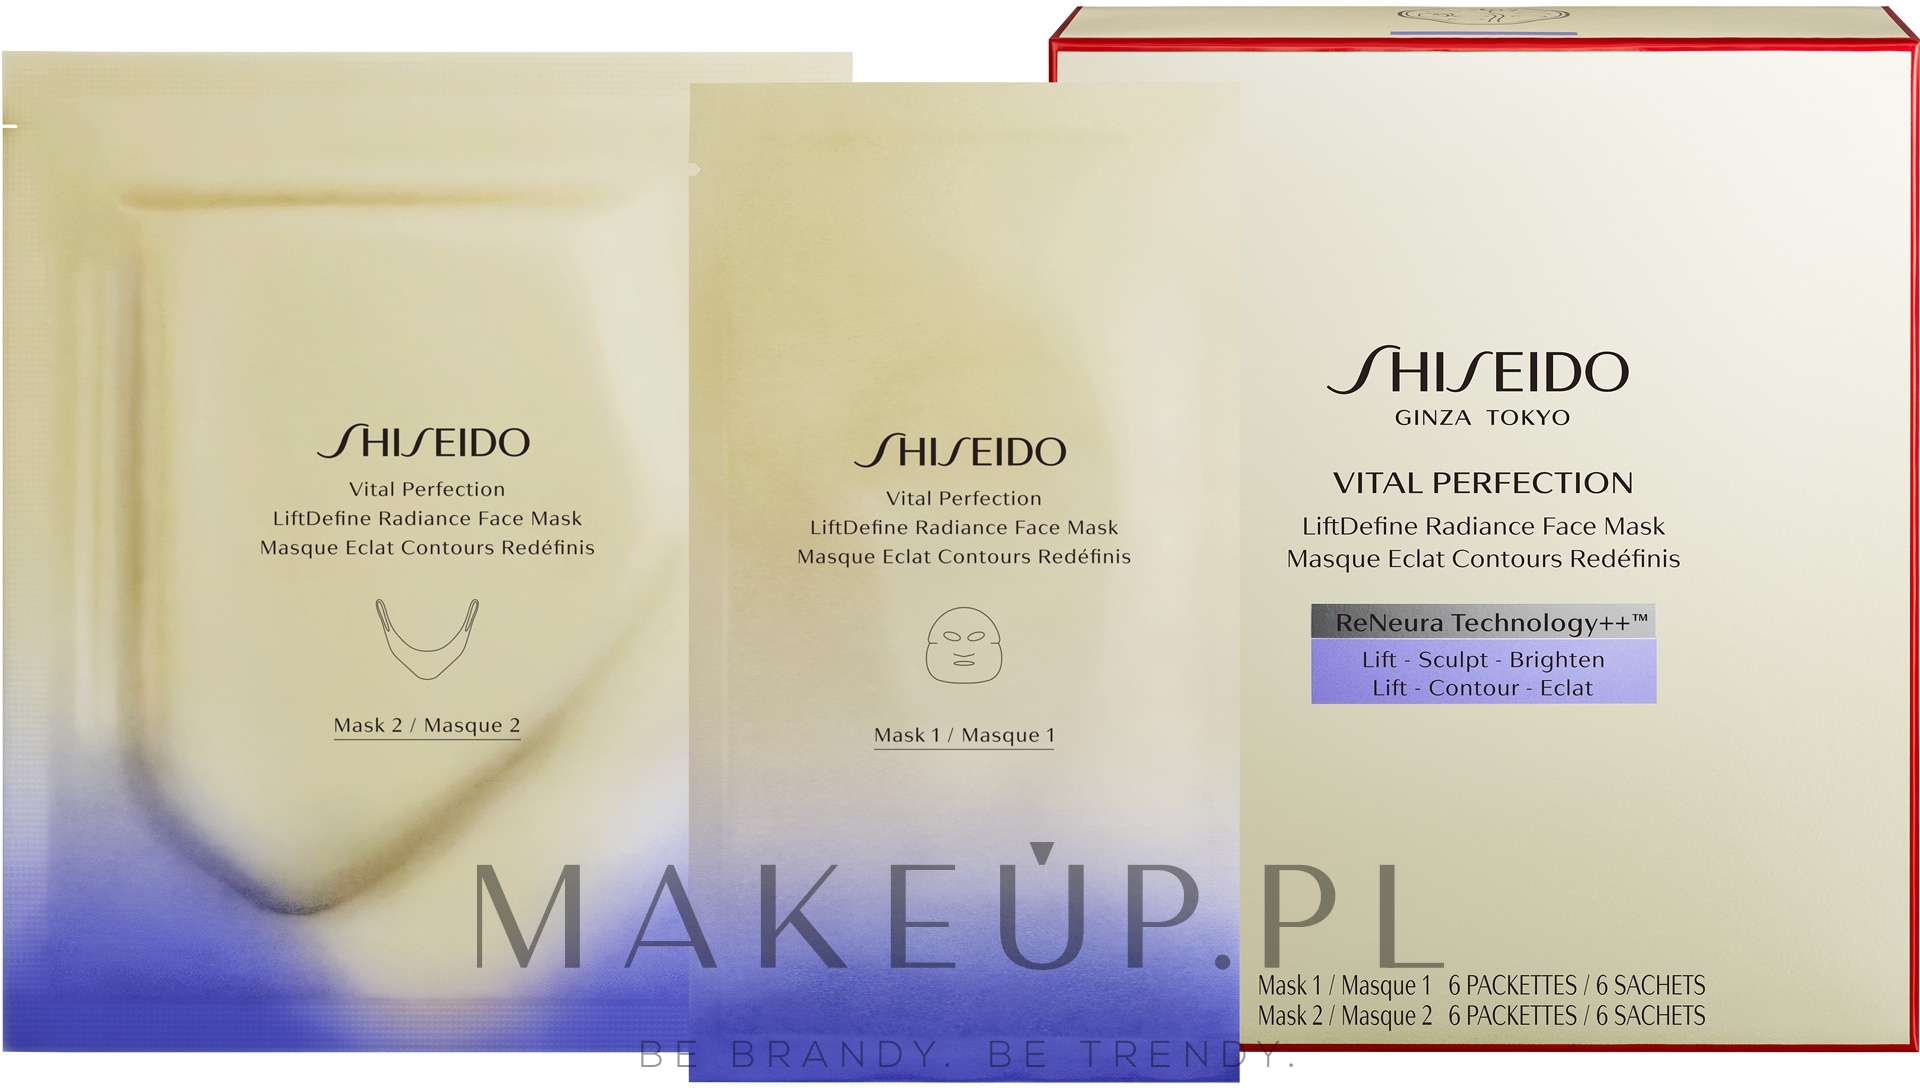 Odmładzająca maseczka w płachcie do twarzy - Shiseido Vital Perfection LiftDefine Radiance Face Mask — Zdjęcie 6 szt.